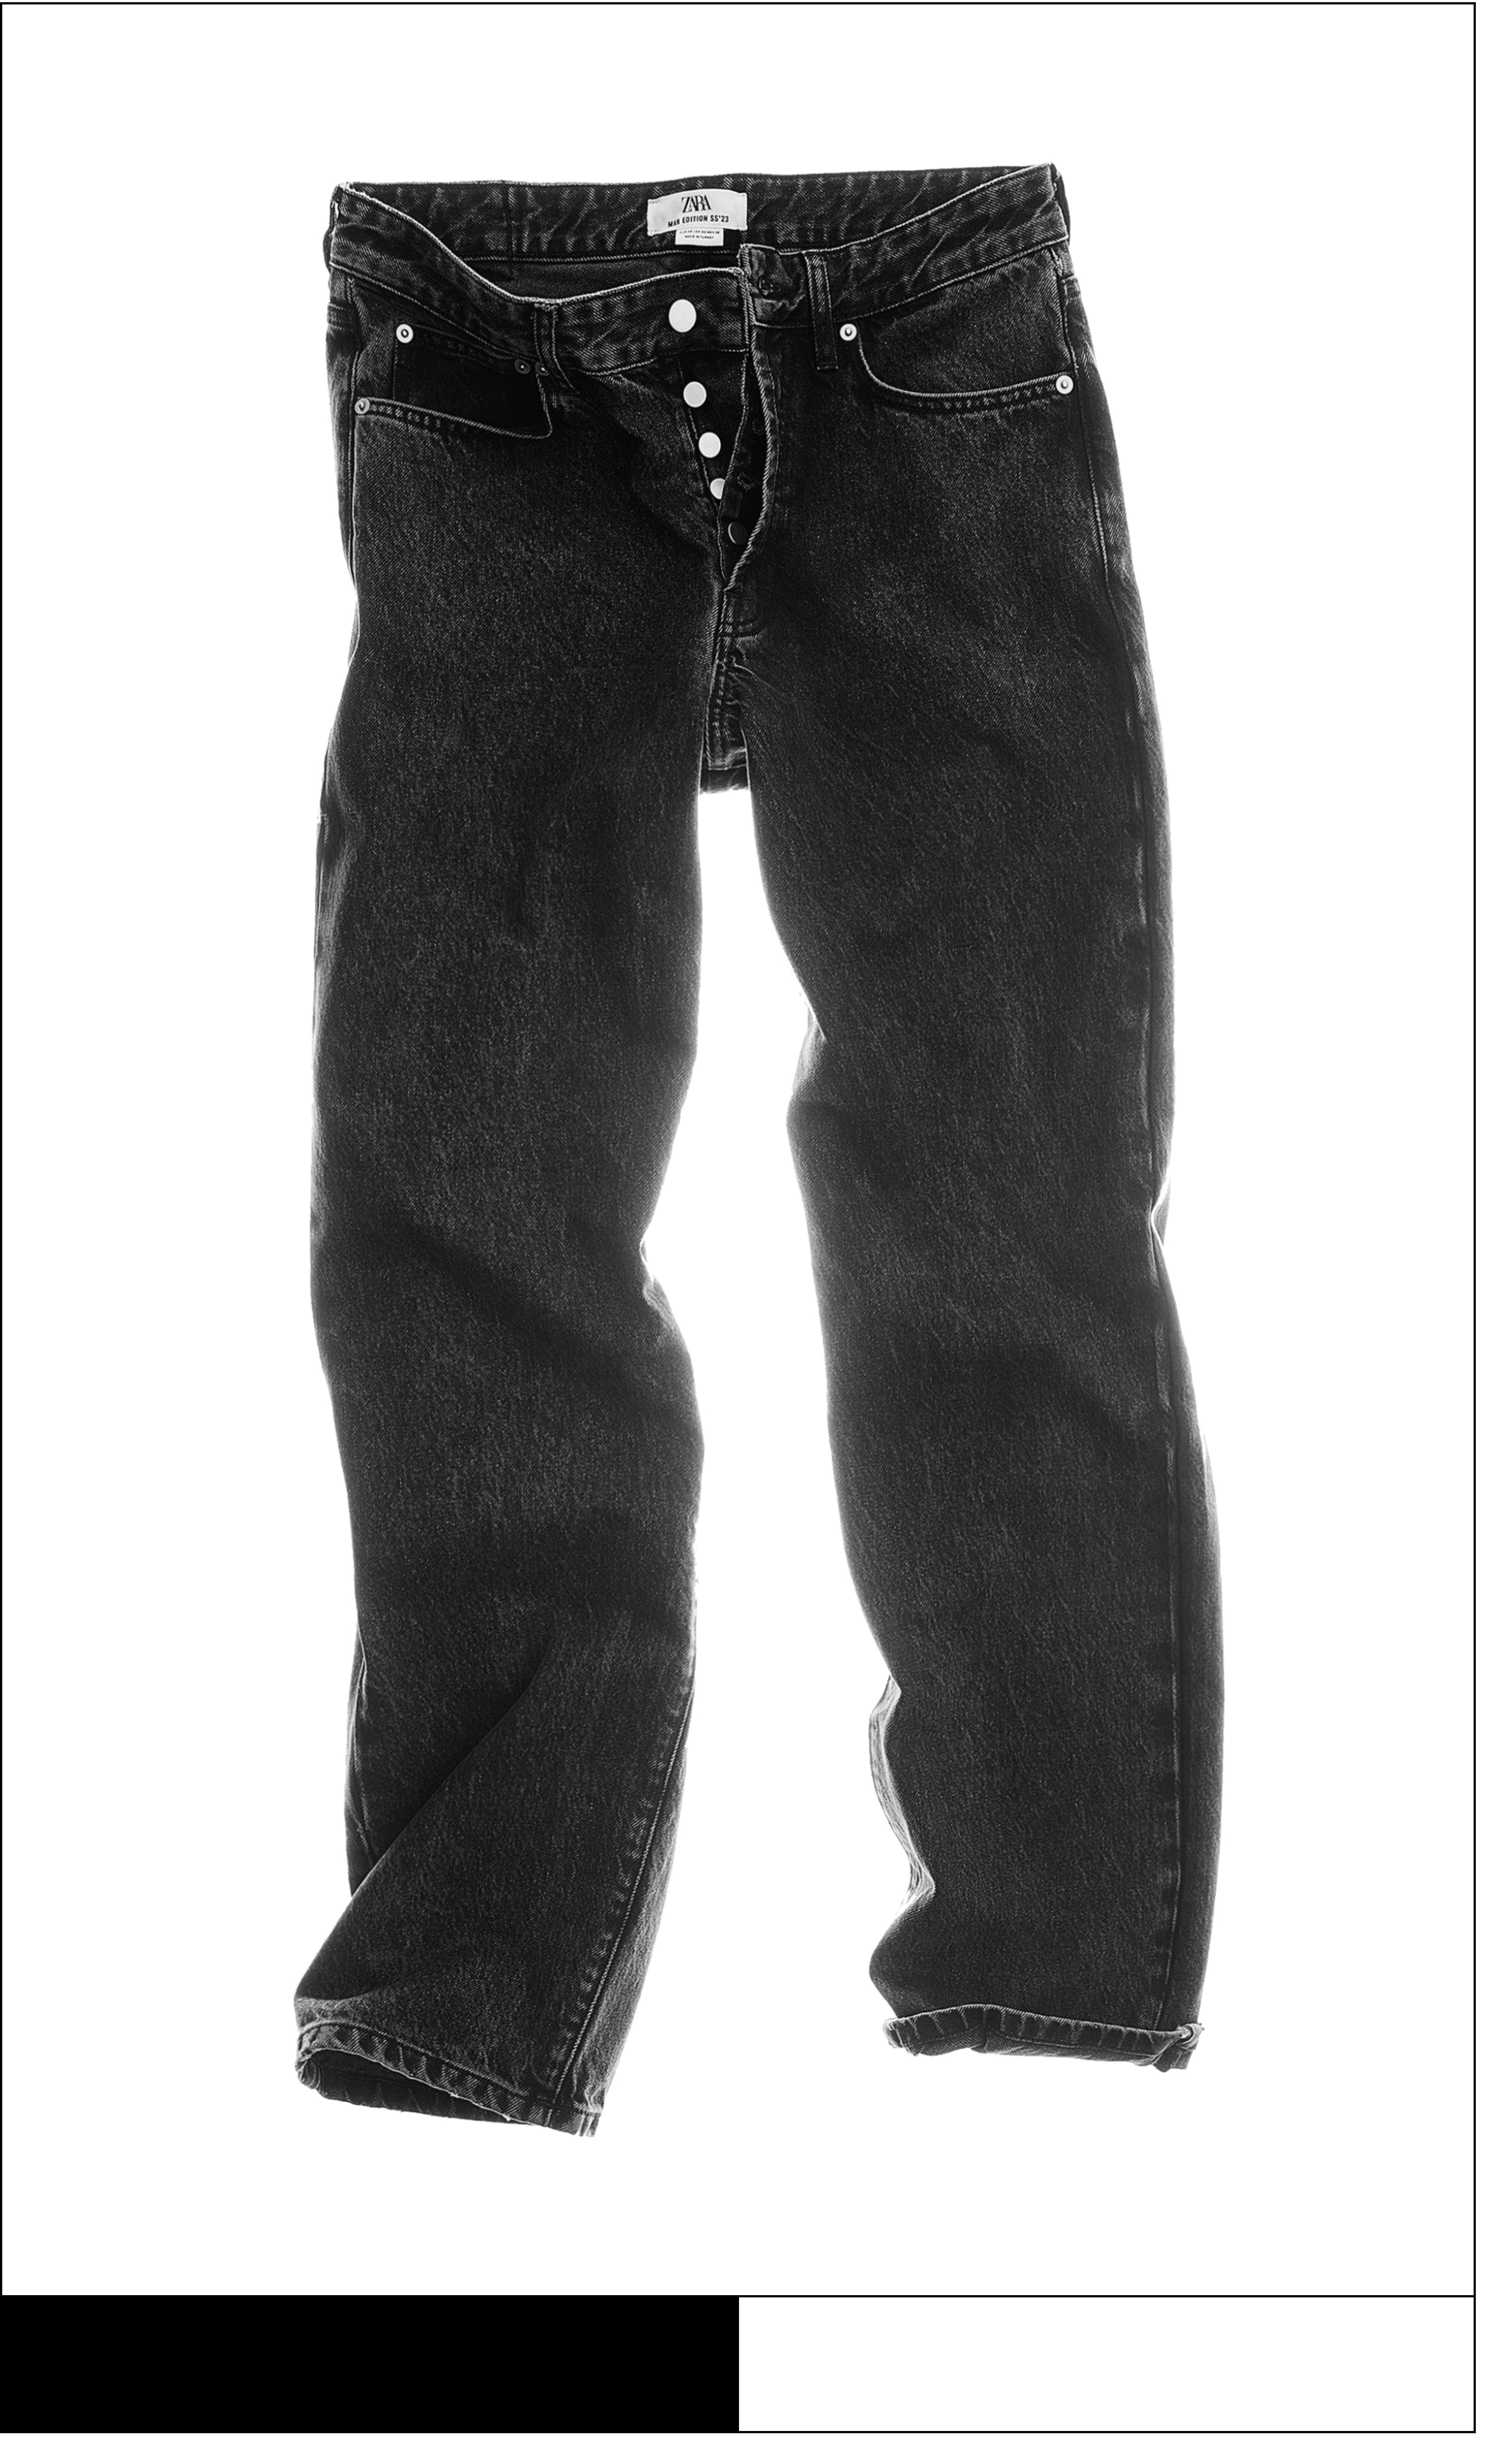 Men's Skinny Jeans  ZARA United States